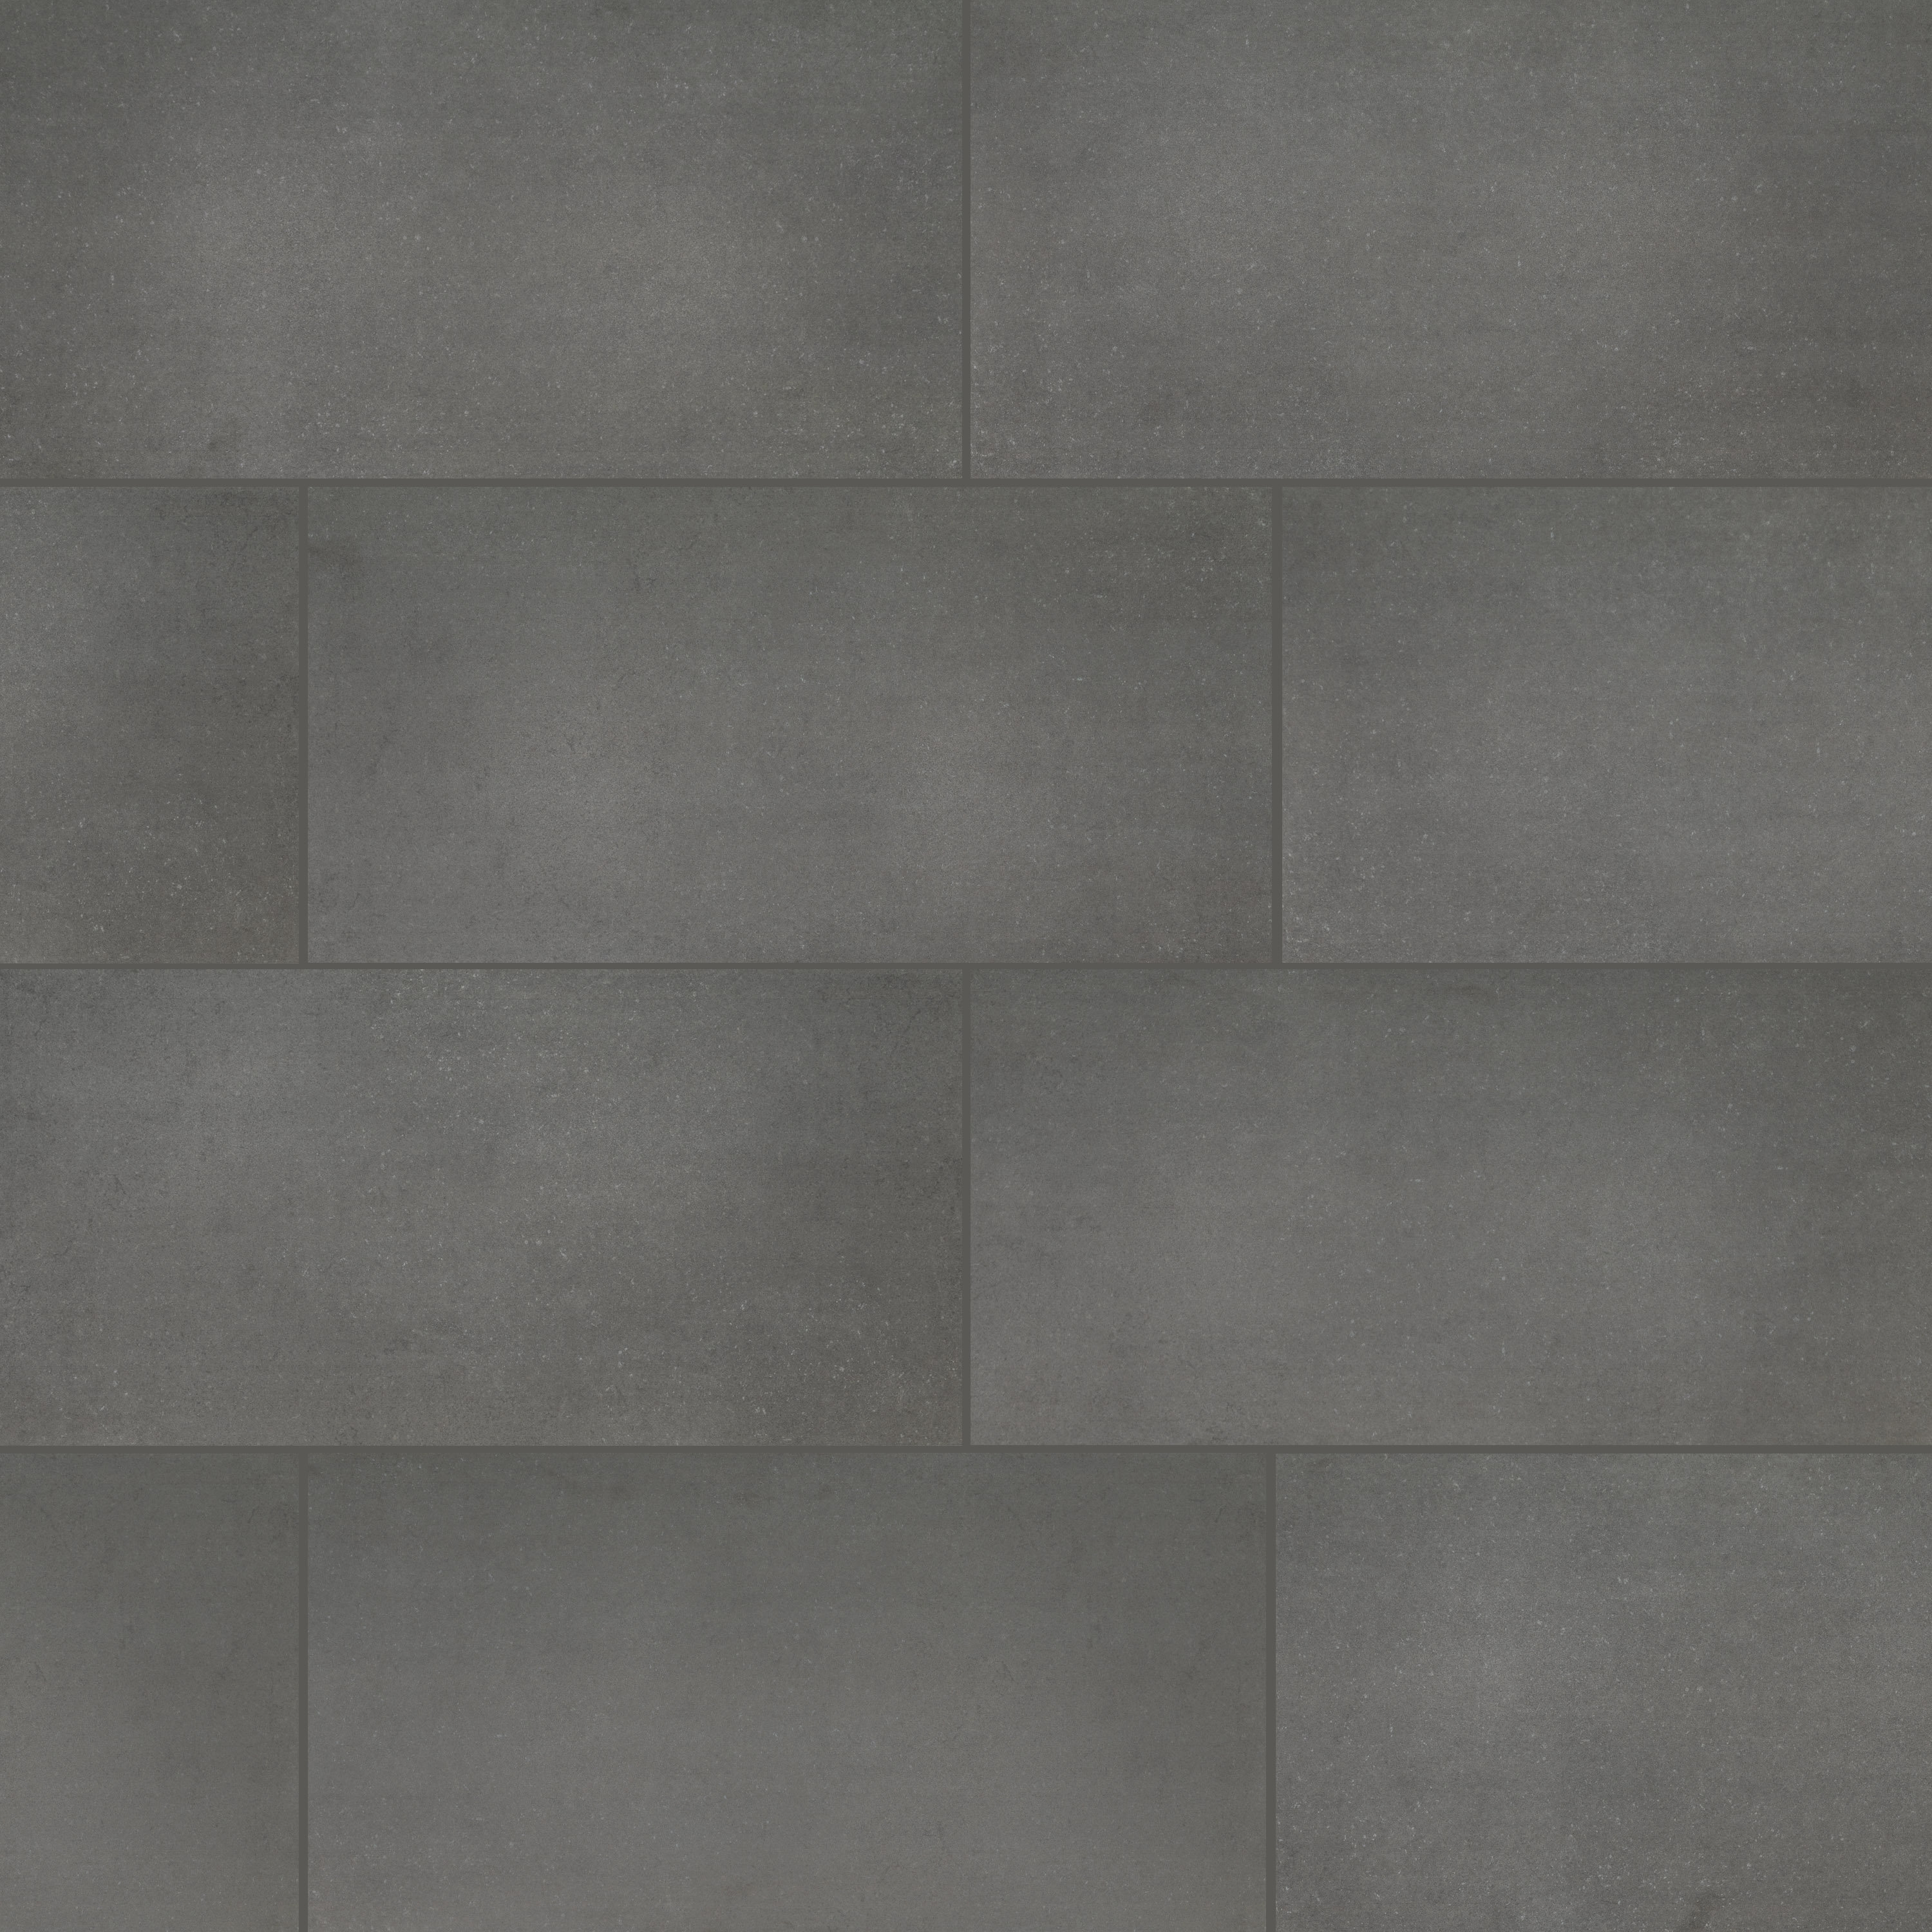 Wayfair  Garage Flooring - Floor Tiles & Mats